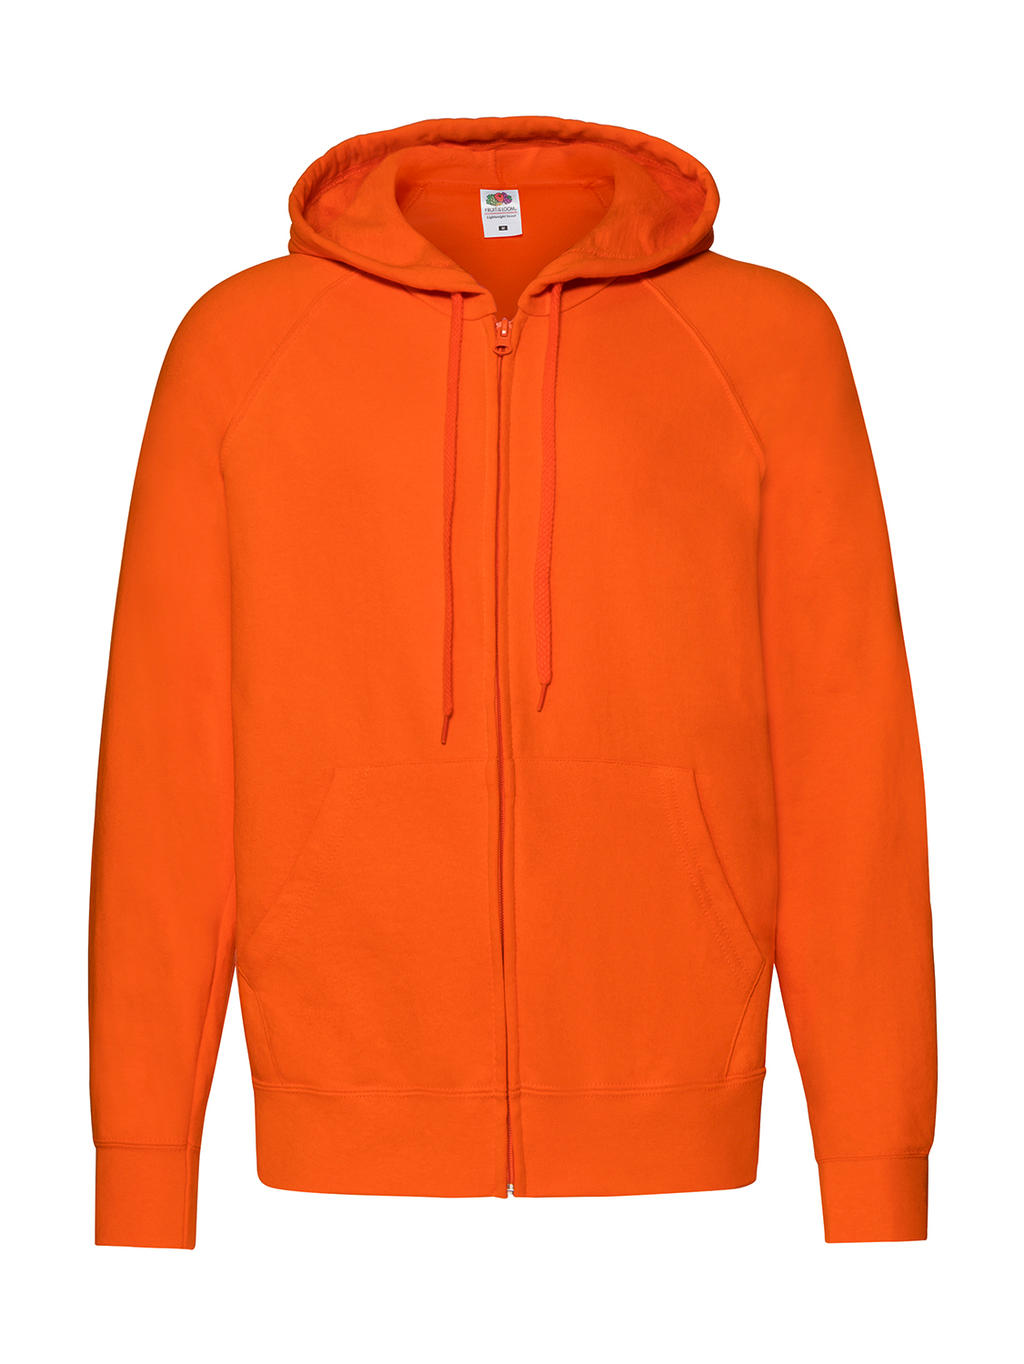  Lightweight Hooded Sweat Jacket in Farbe Orange